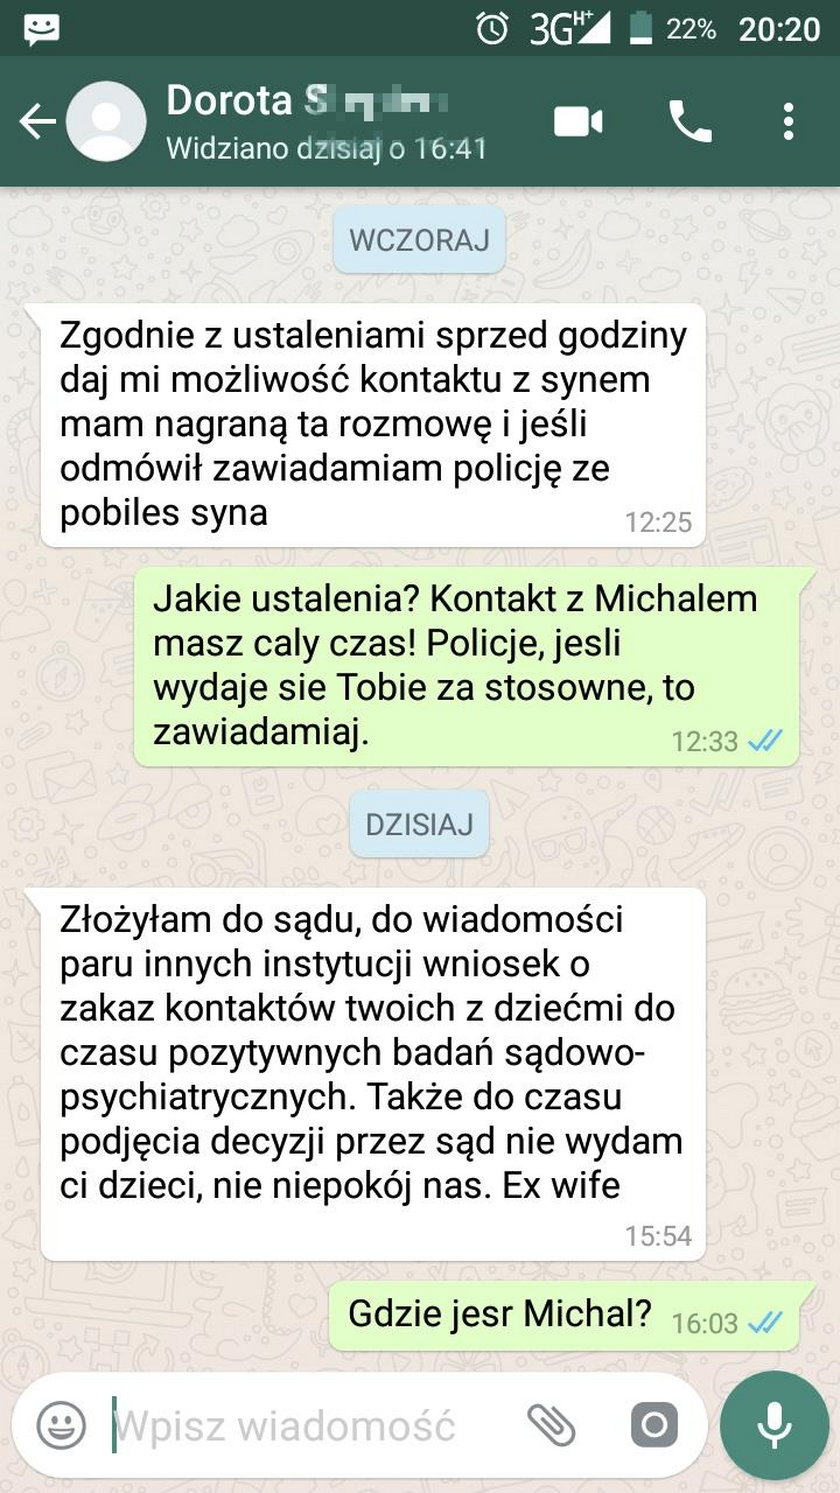 Policjant z Gdańska oskarża żonę prokurator: nakłania mnie do samobójstwa!